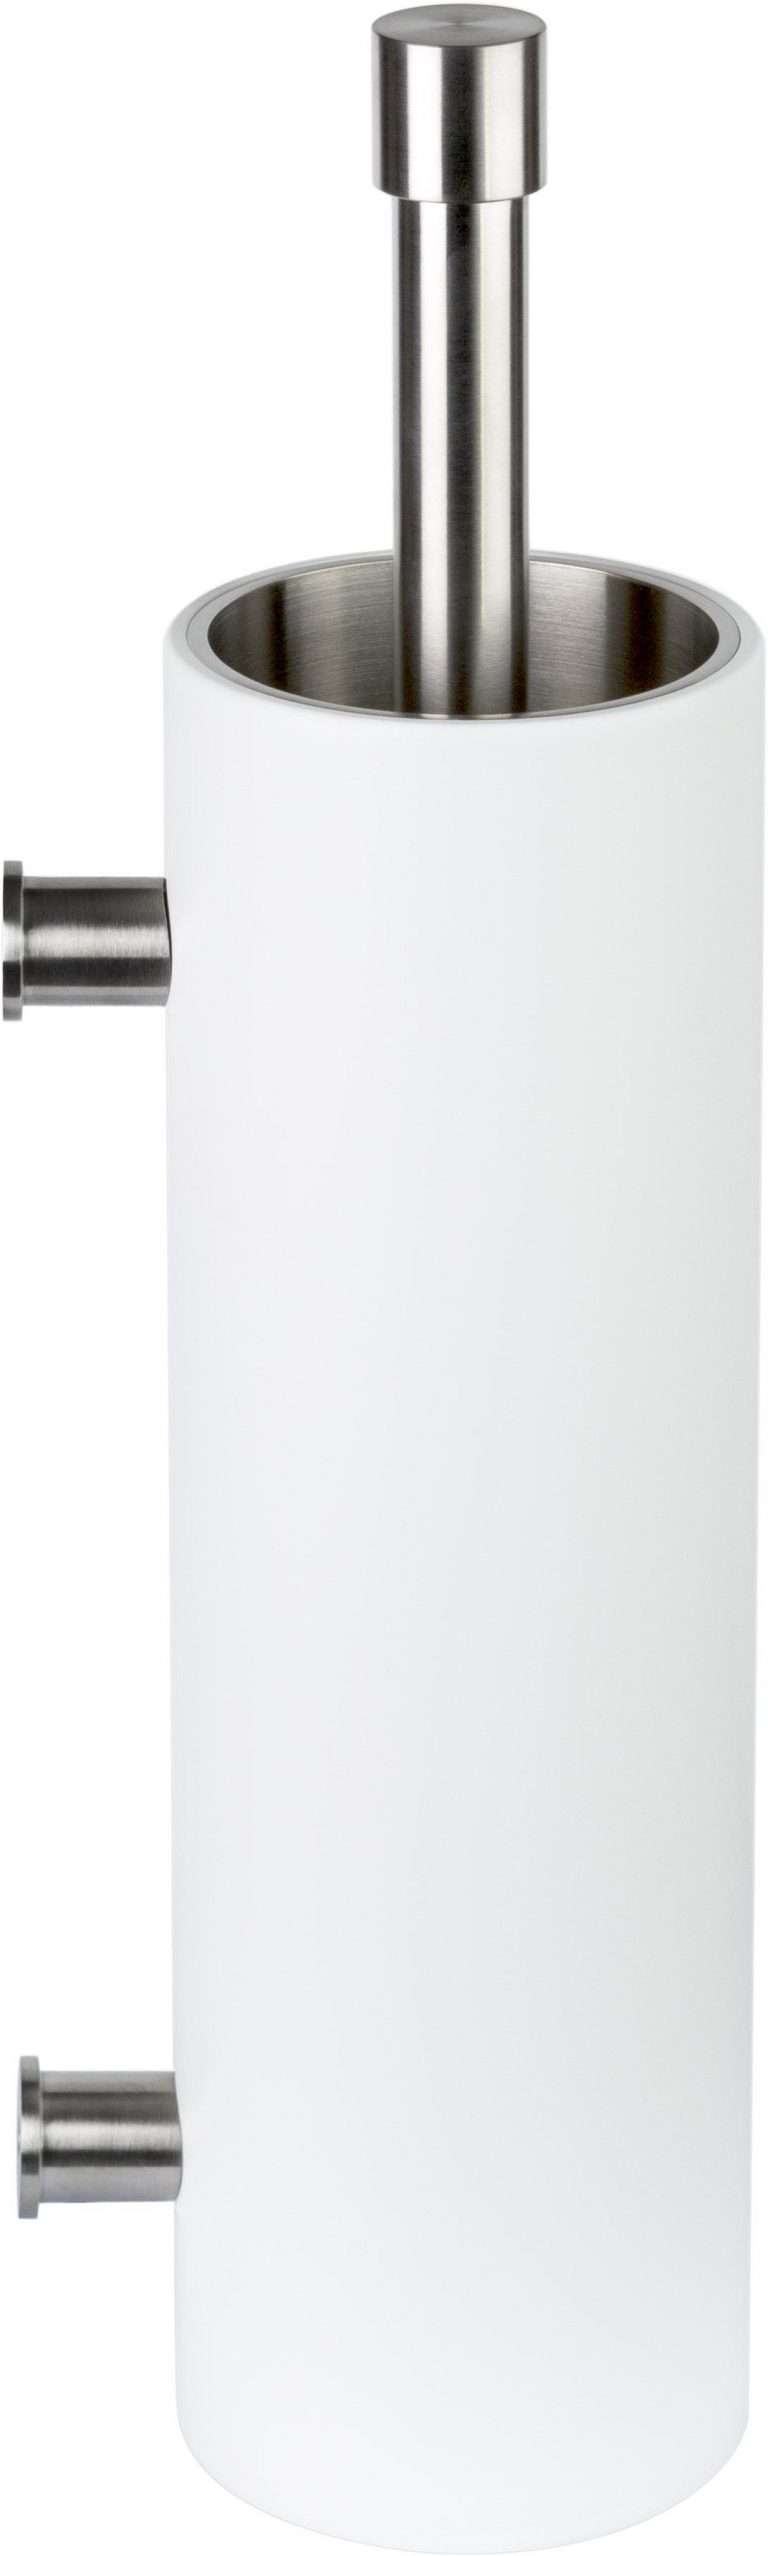 PIET BOON PB303 toiletborstel met muurbevestiging mat roestvast staal AISI 316/wit Corian®